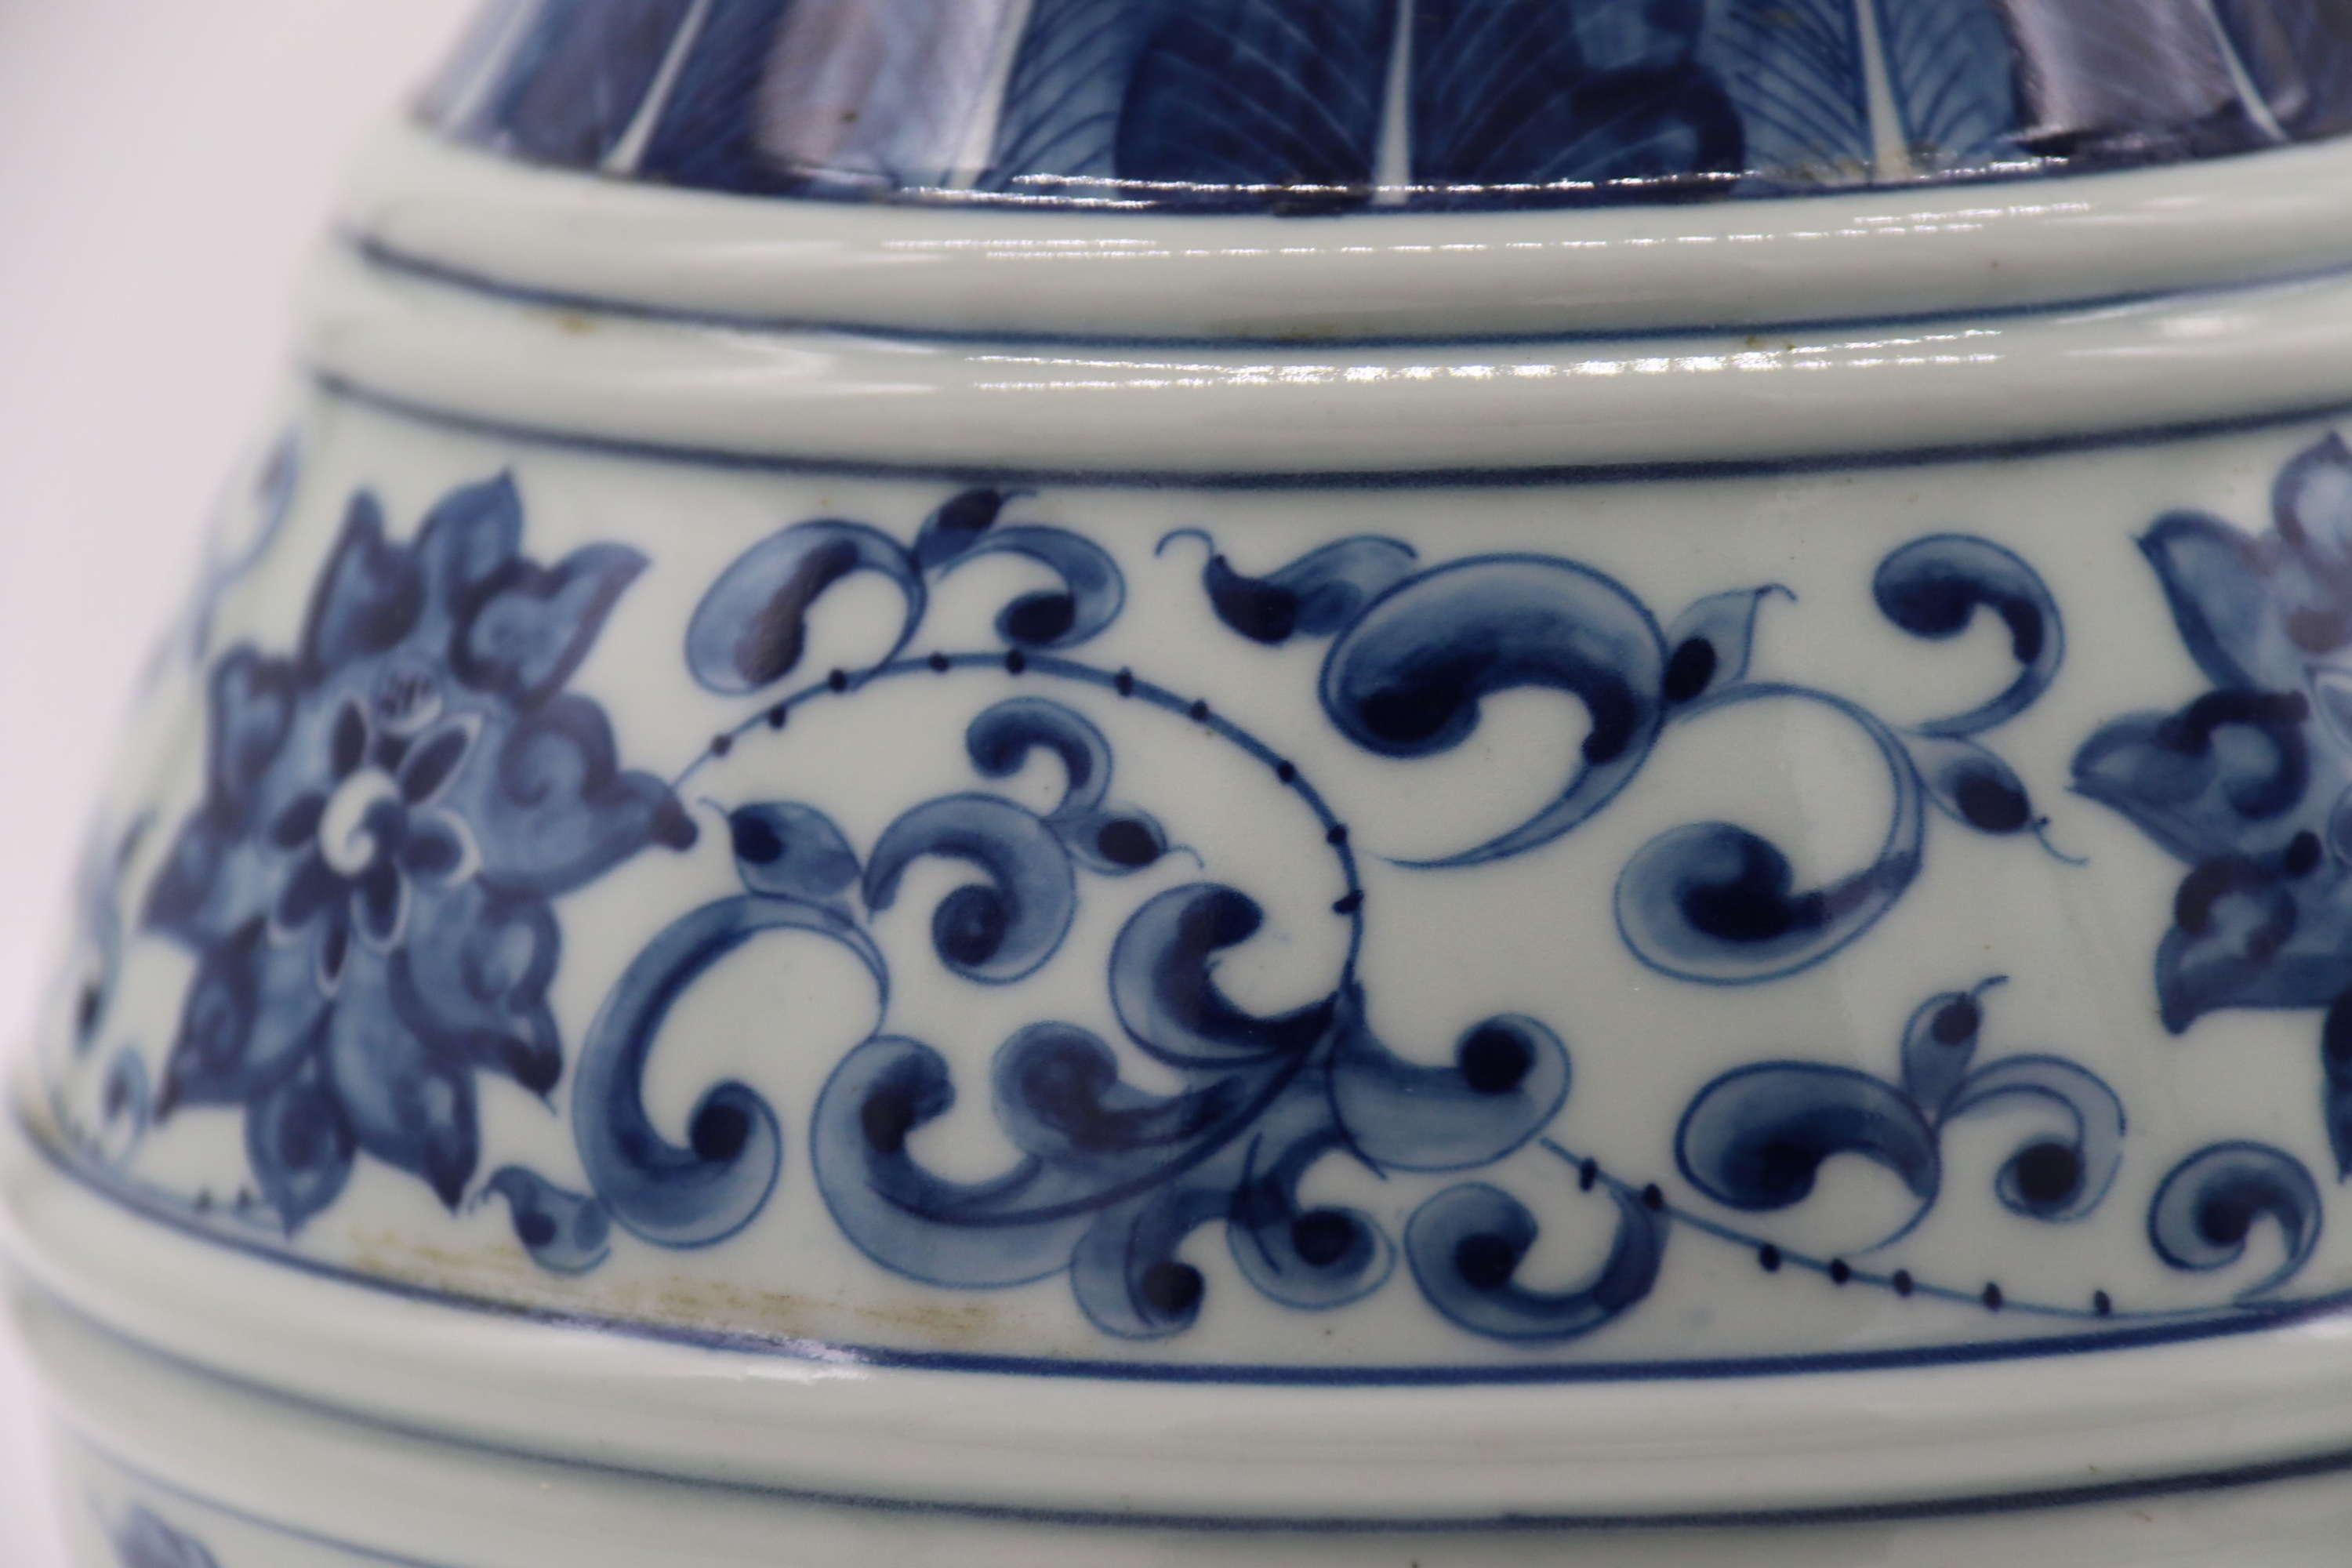 Paar chinesische handbemalte Vasen in Blau und Weiß, CIRCA 1930

Ein beeindruckendes und ungewöhnliches Paar chinesischer Porzellanvasen in traditioneller Form mit erhöhtem Fuß und bauchigem Körper, der sich zu einem ausladenden Hals verengt. Die